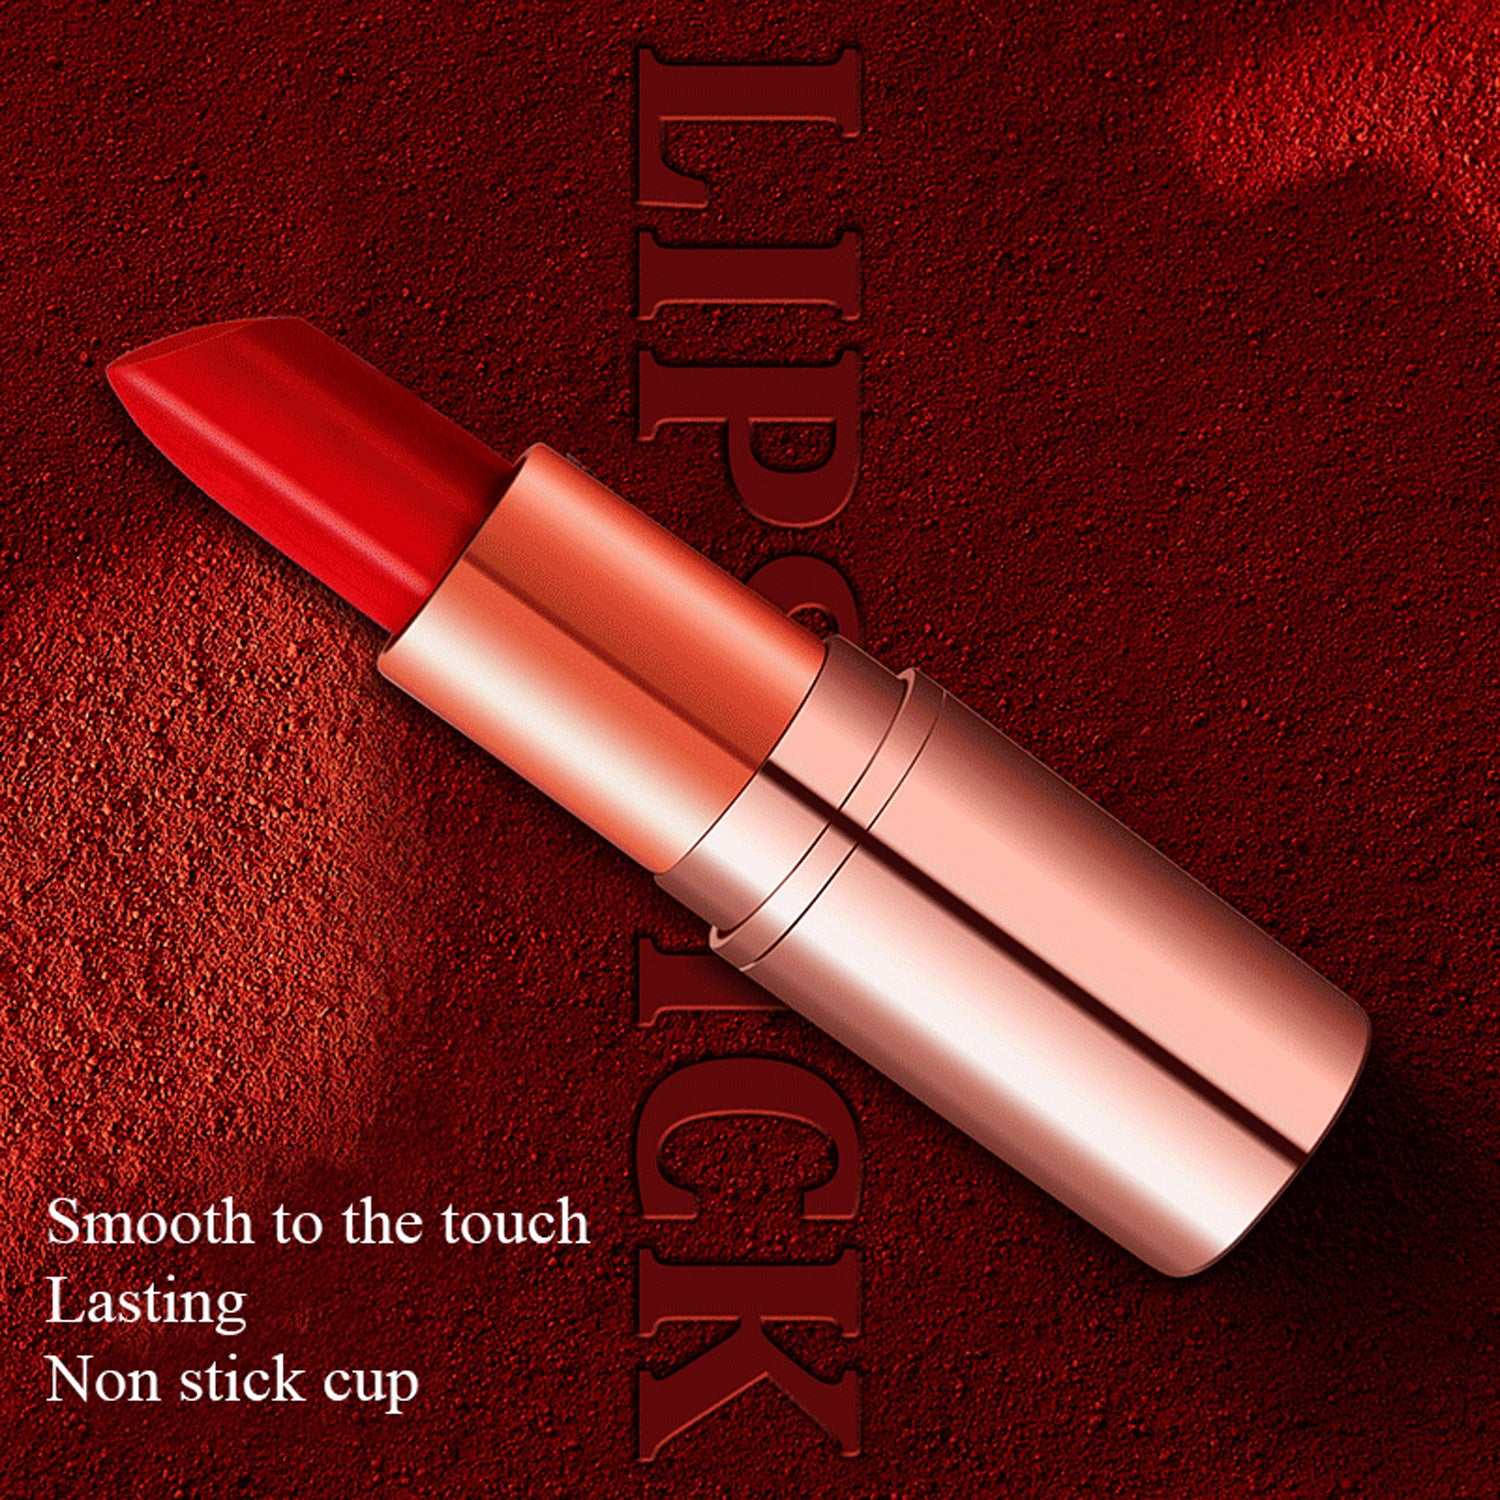 4pcs Lip Stick Bundles Gift Box Set | Matte Nude Finish